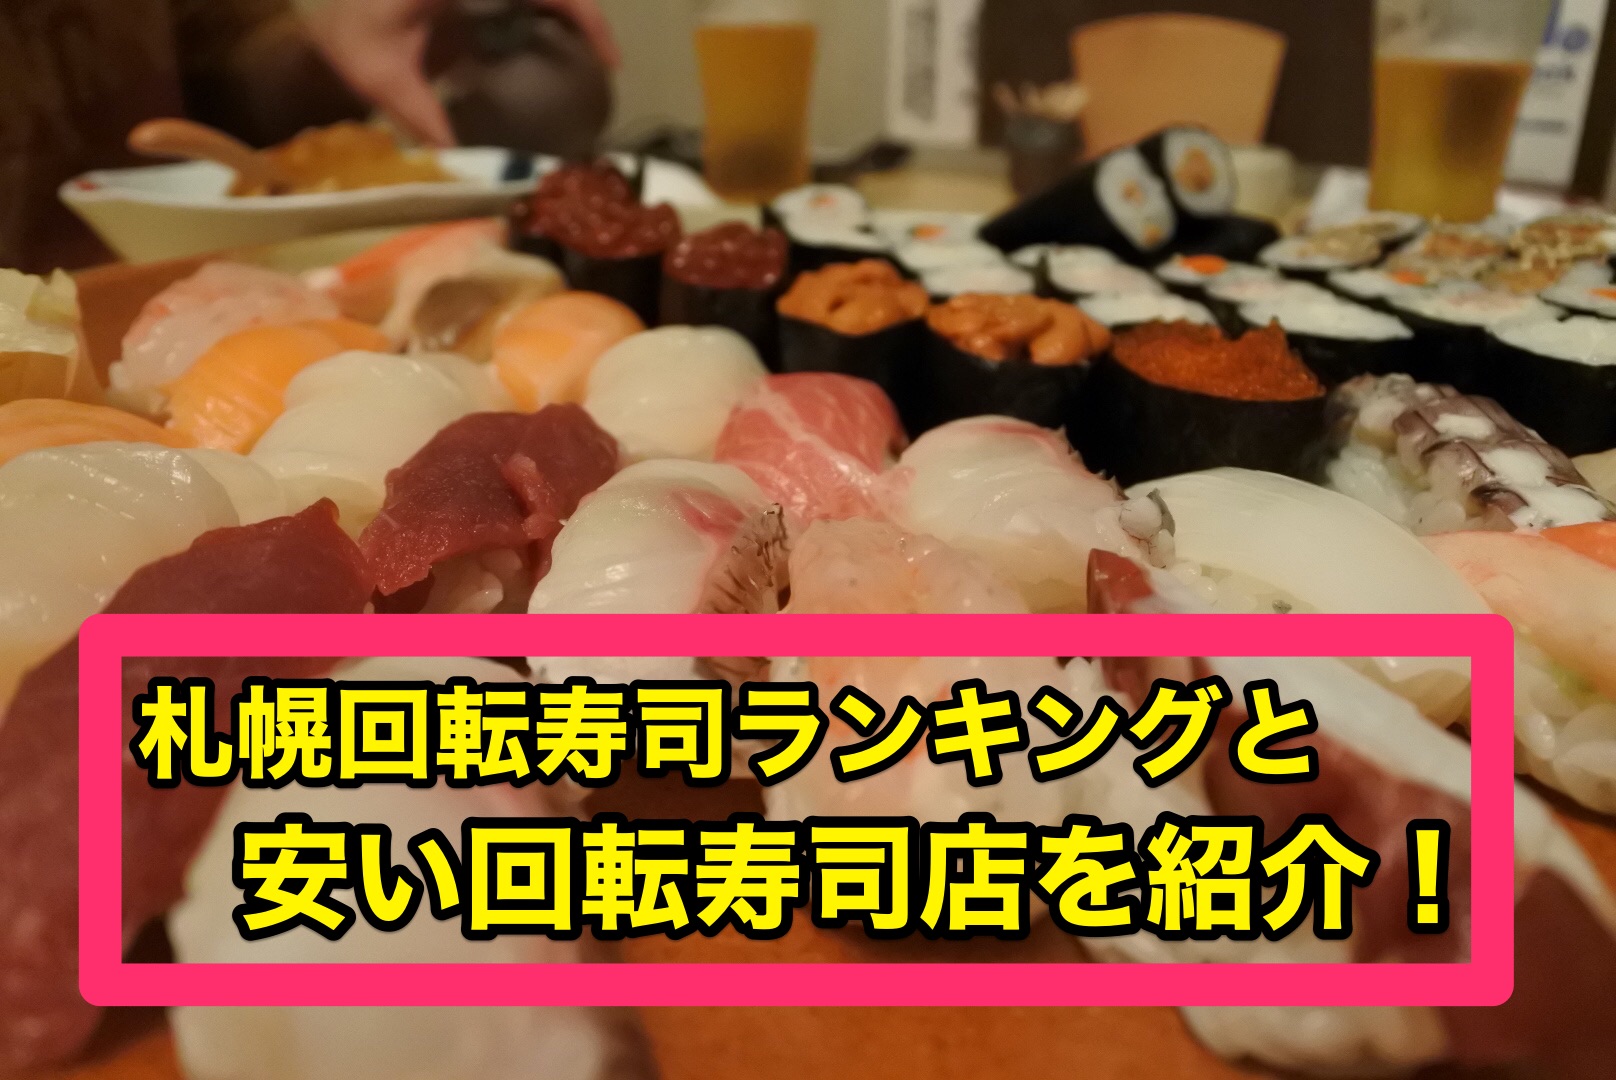 札幌回転寿司ランキングと安い回転寿司店を紹介